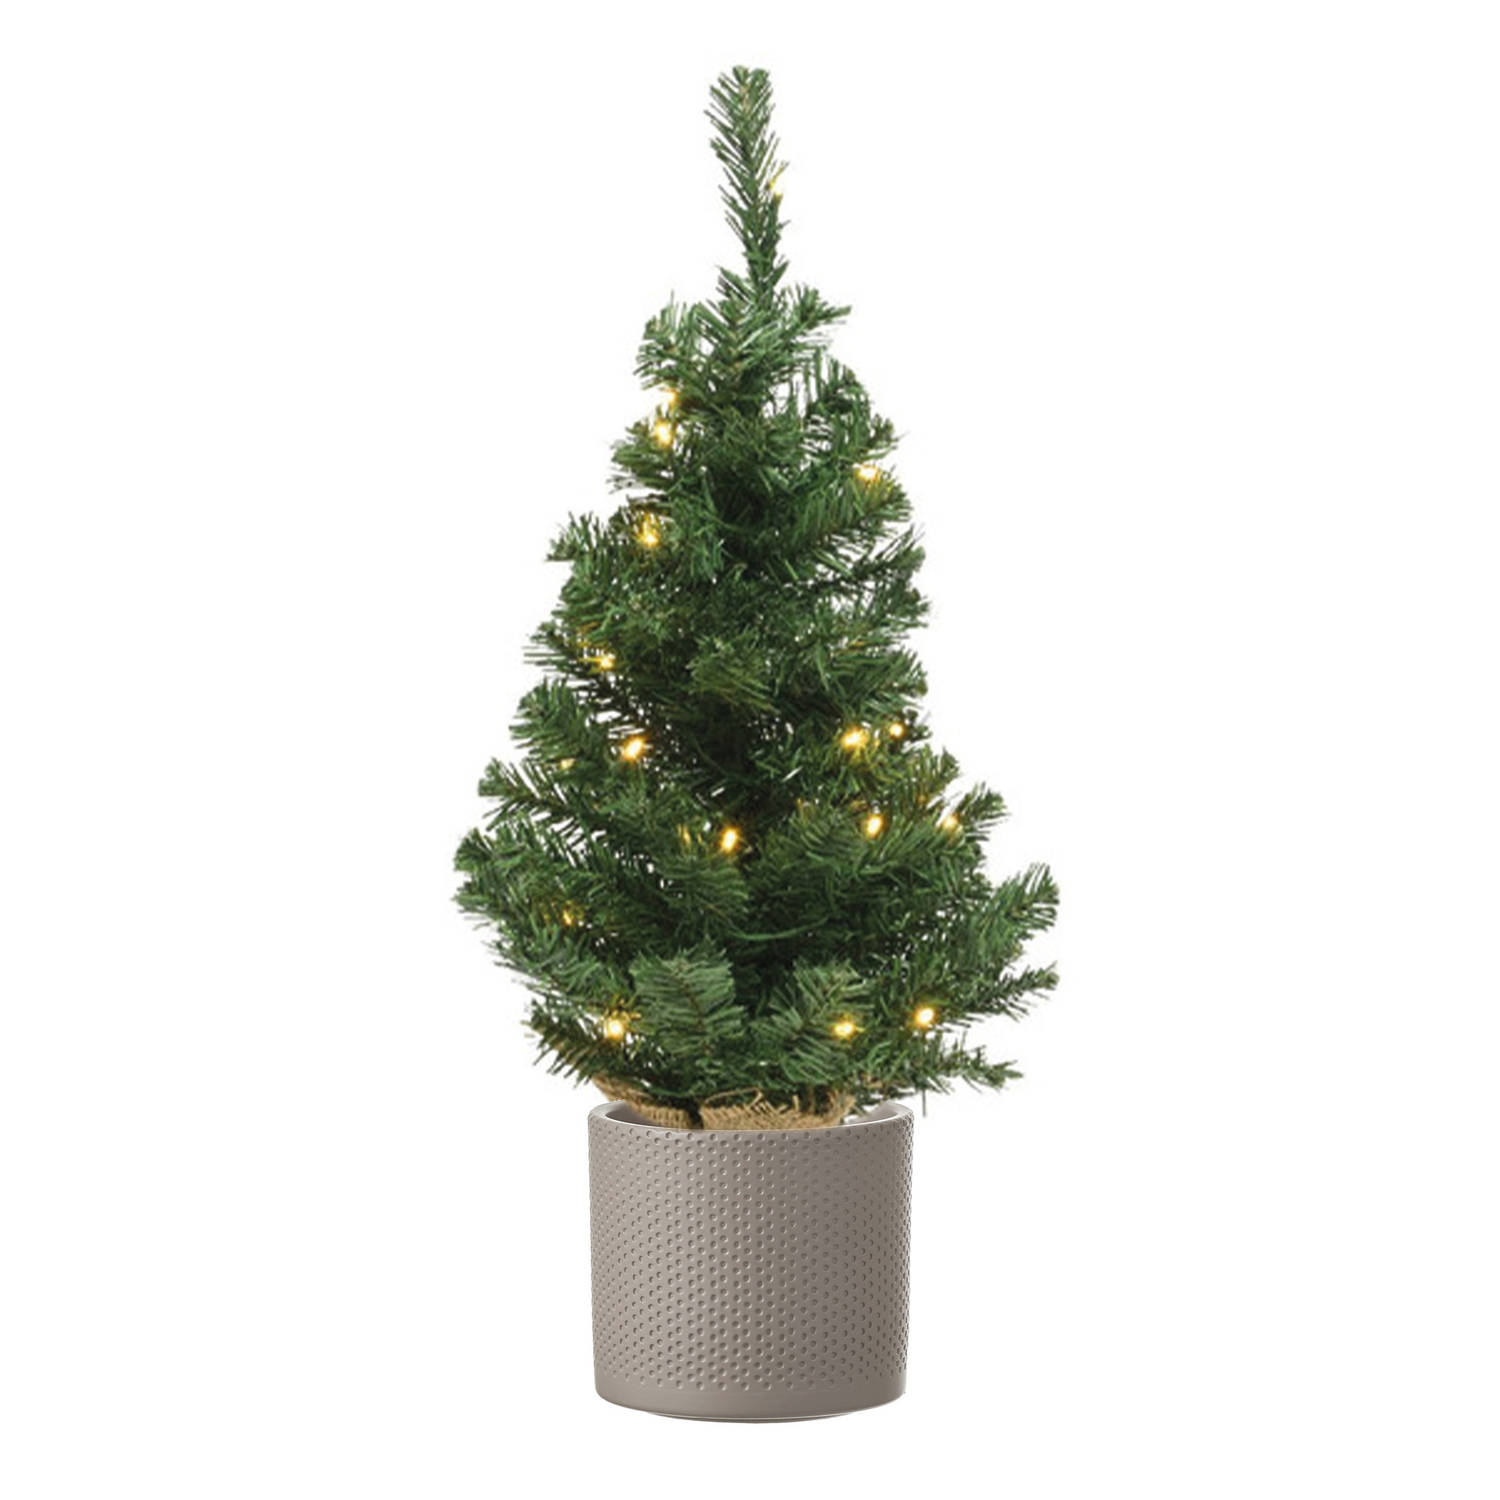 Volle Mini Kerstboom Groen In Jute Zak Met Verlichting 60 Cm En Taupe Pot Kunstkerstboom